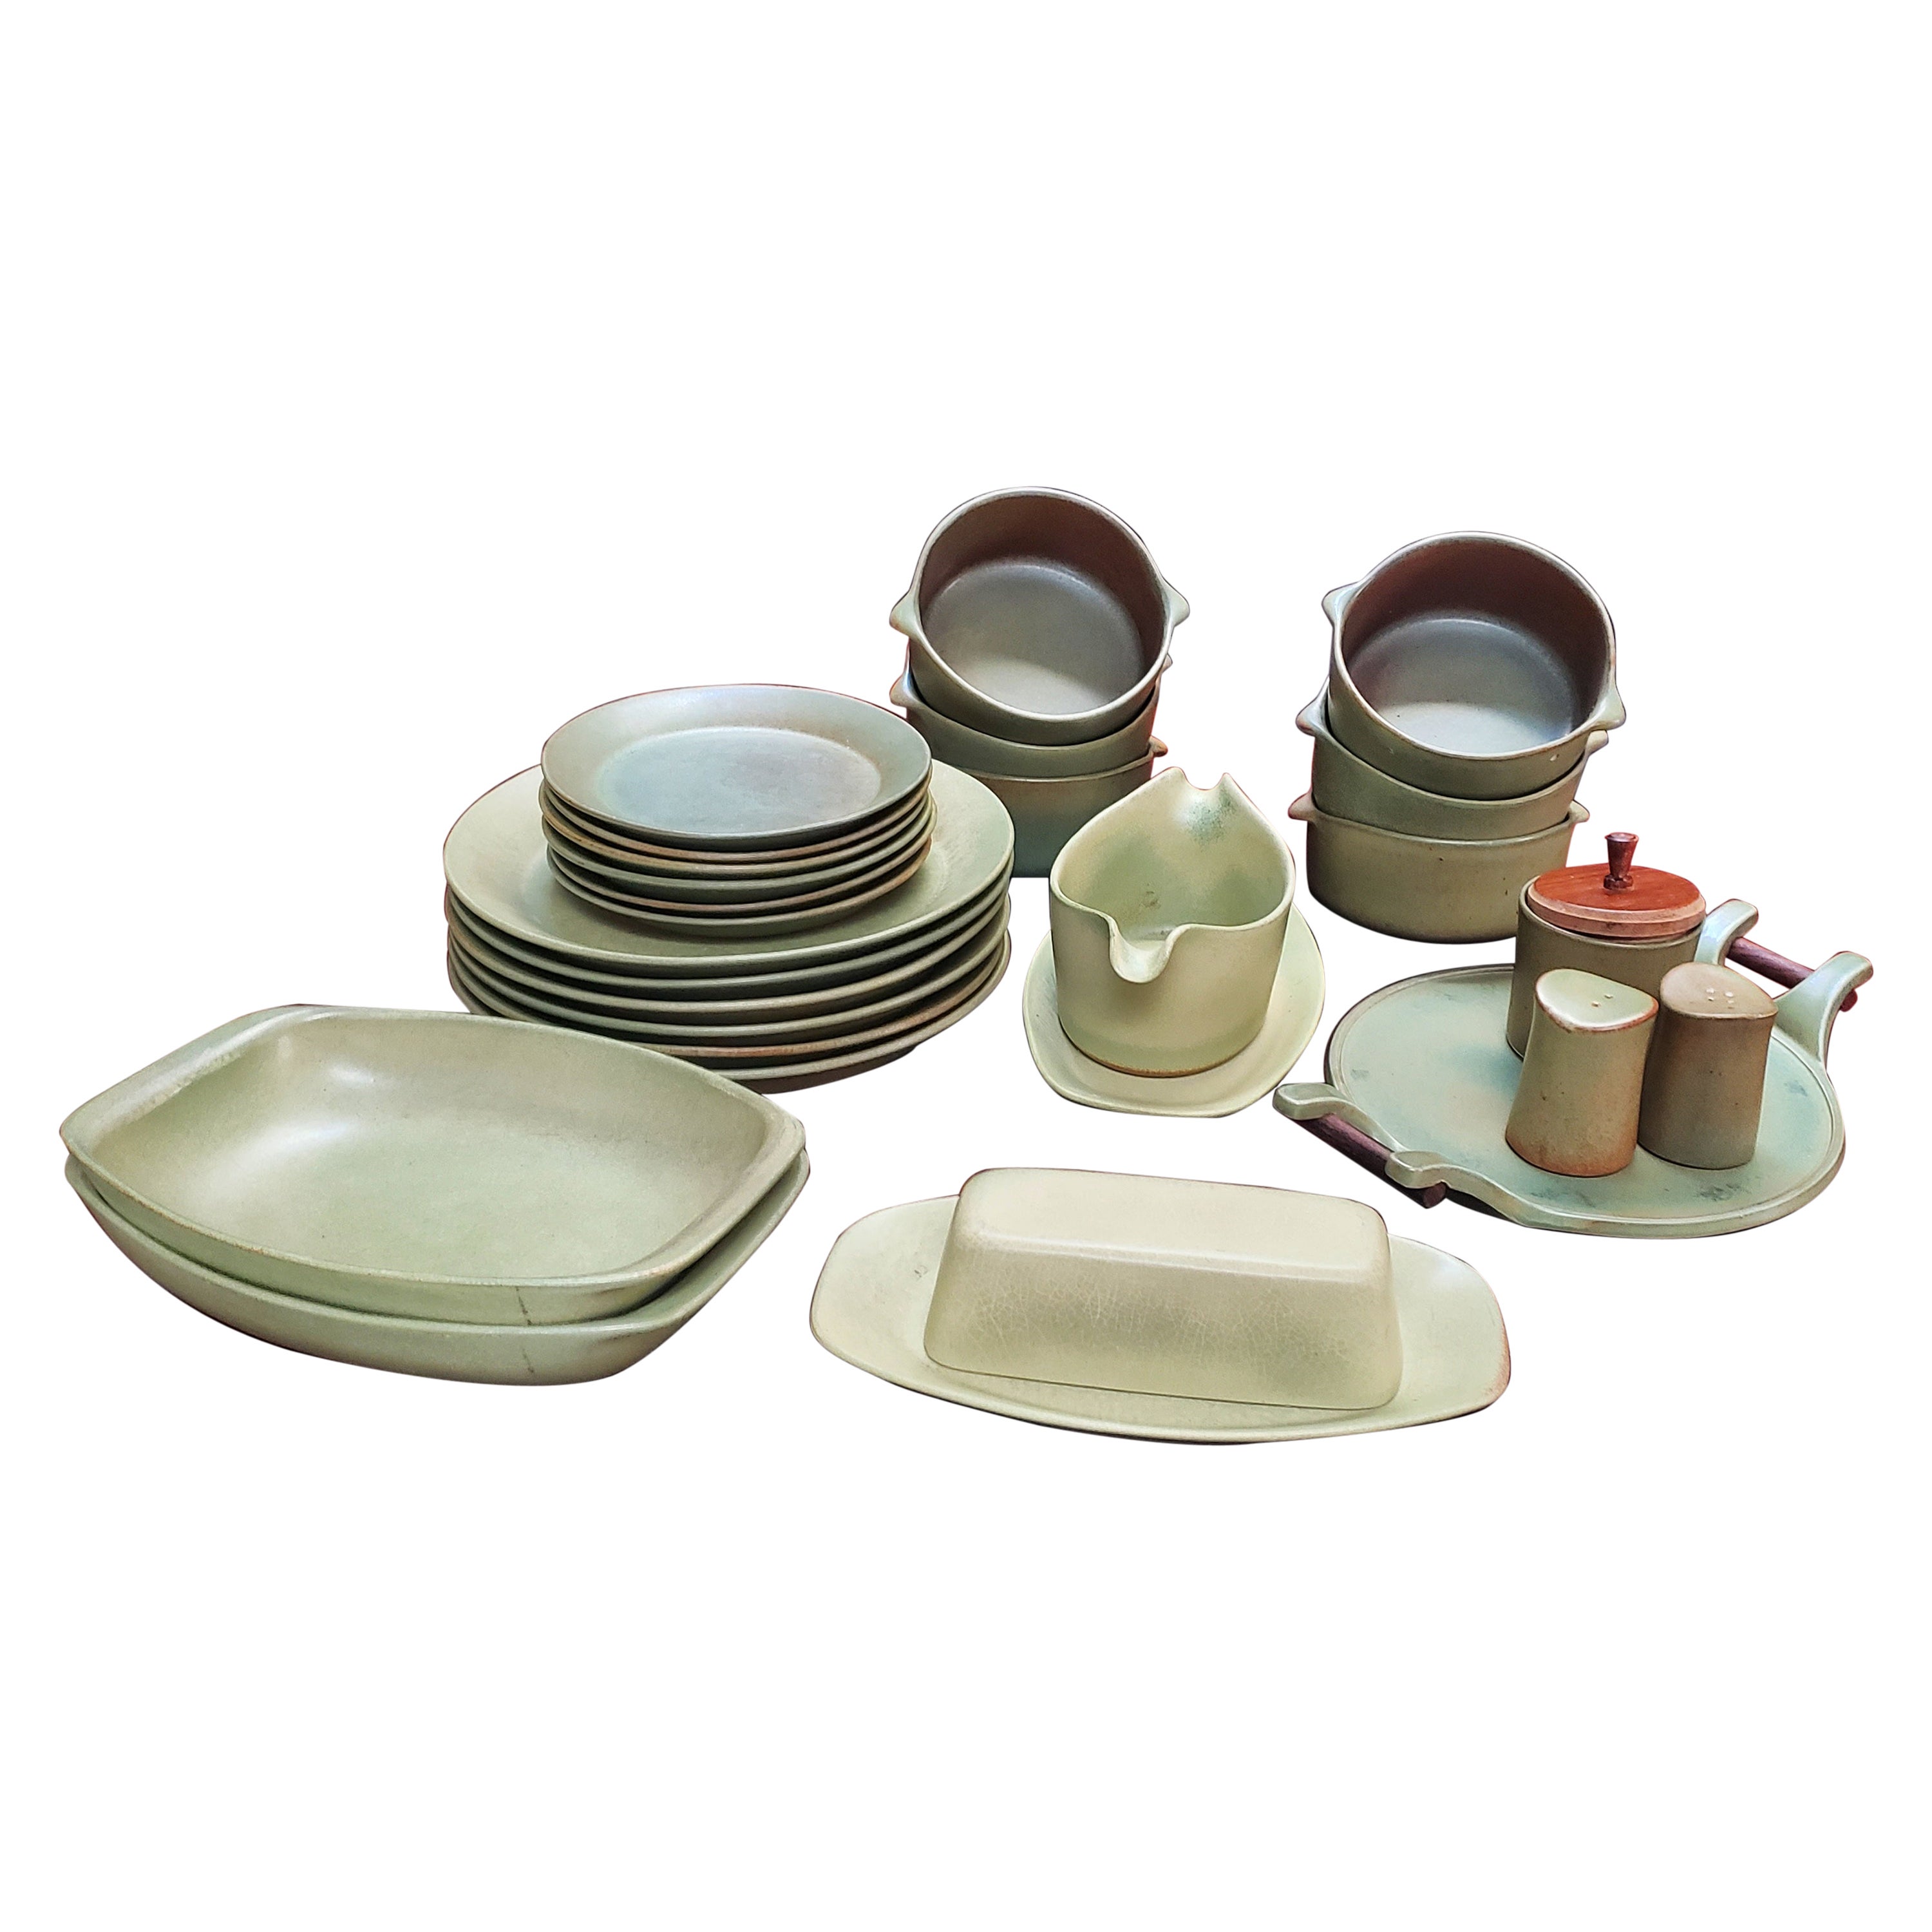 1960s Serveware, Ceramics, Silver and Glass